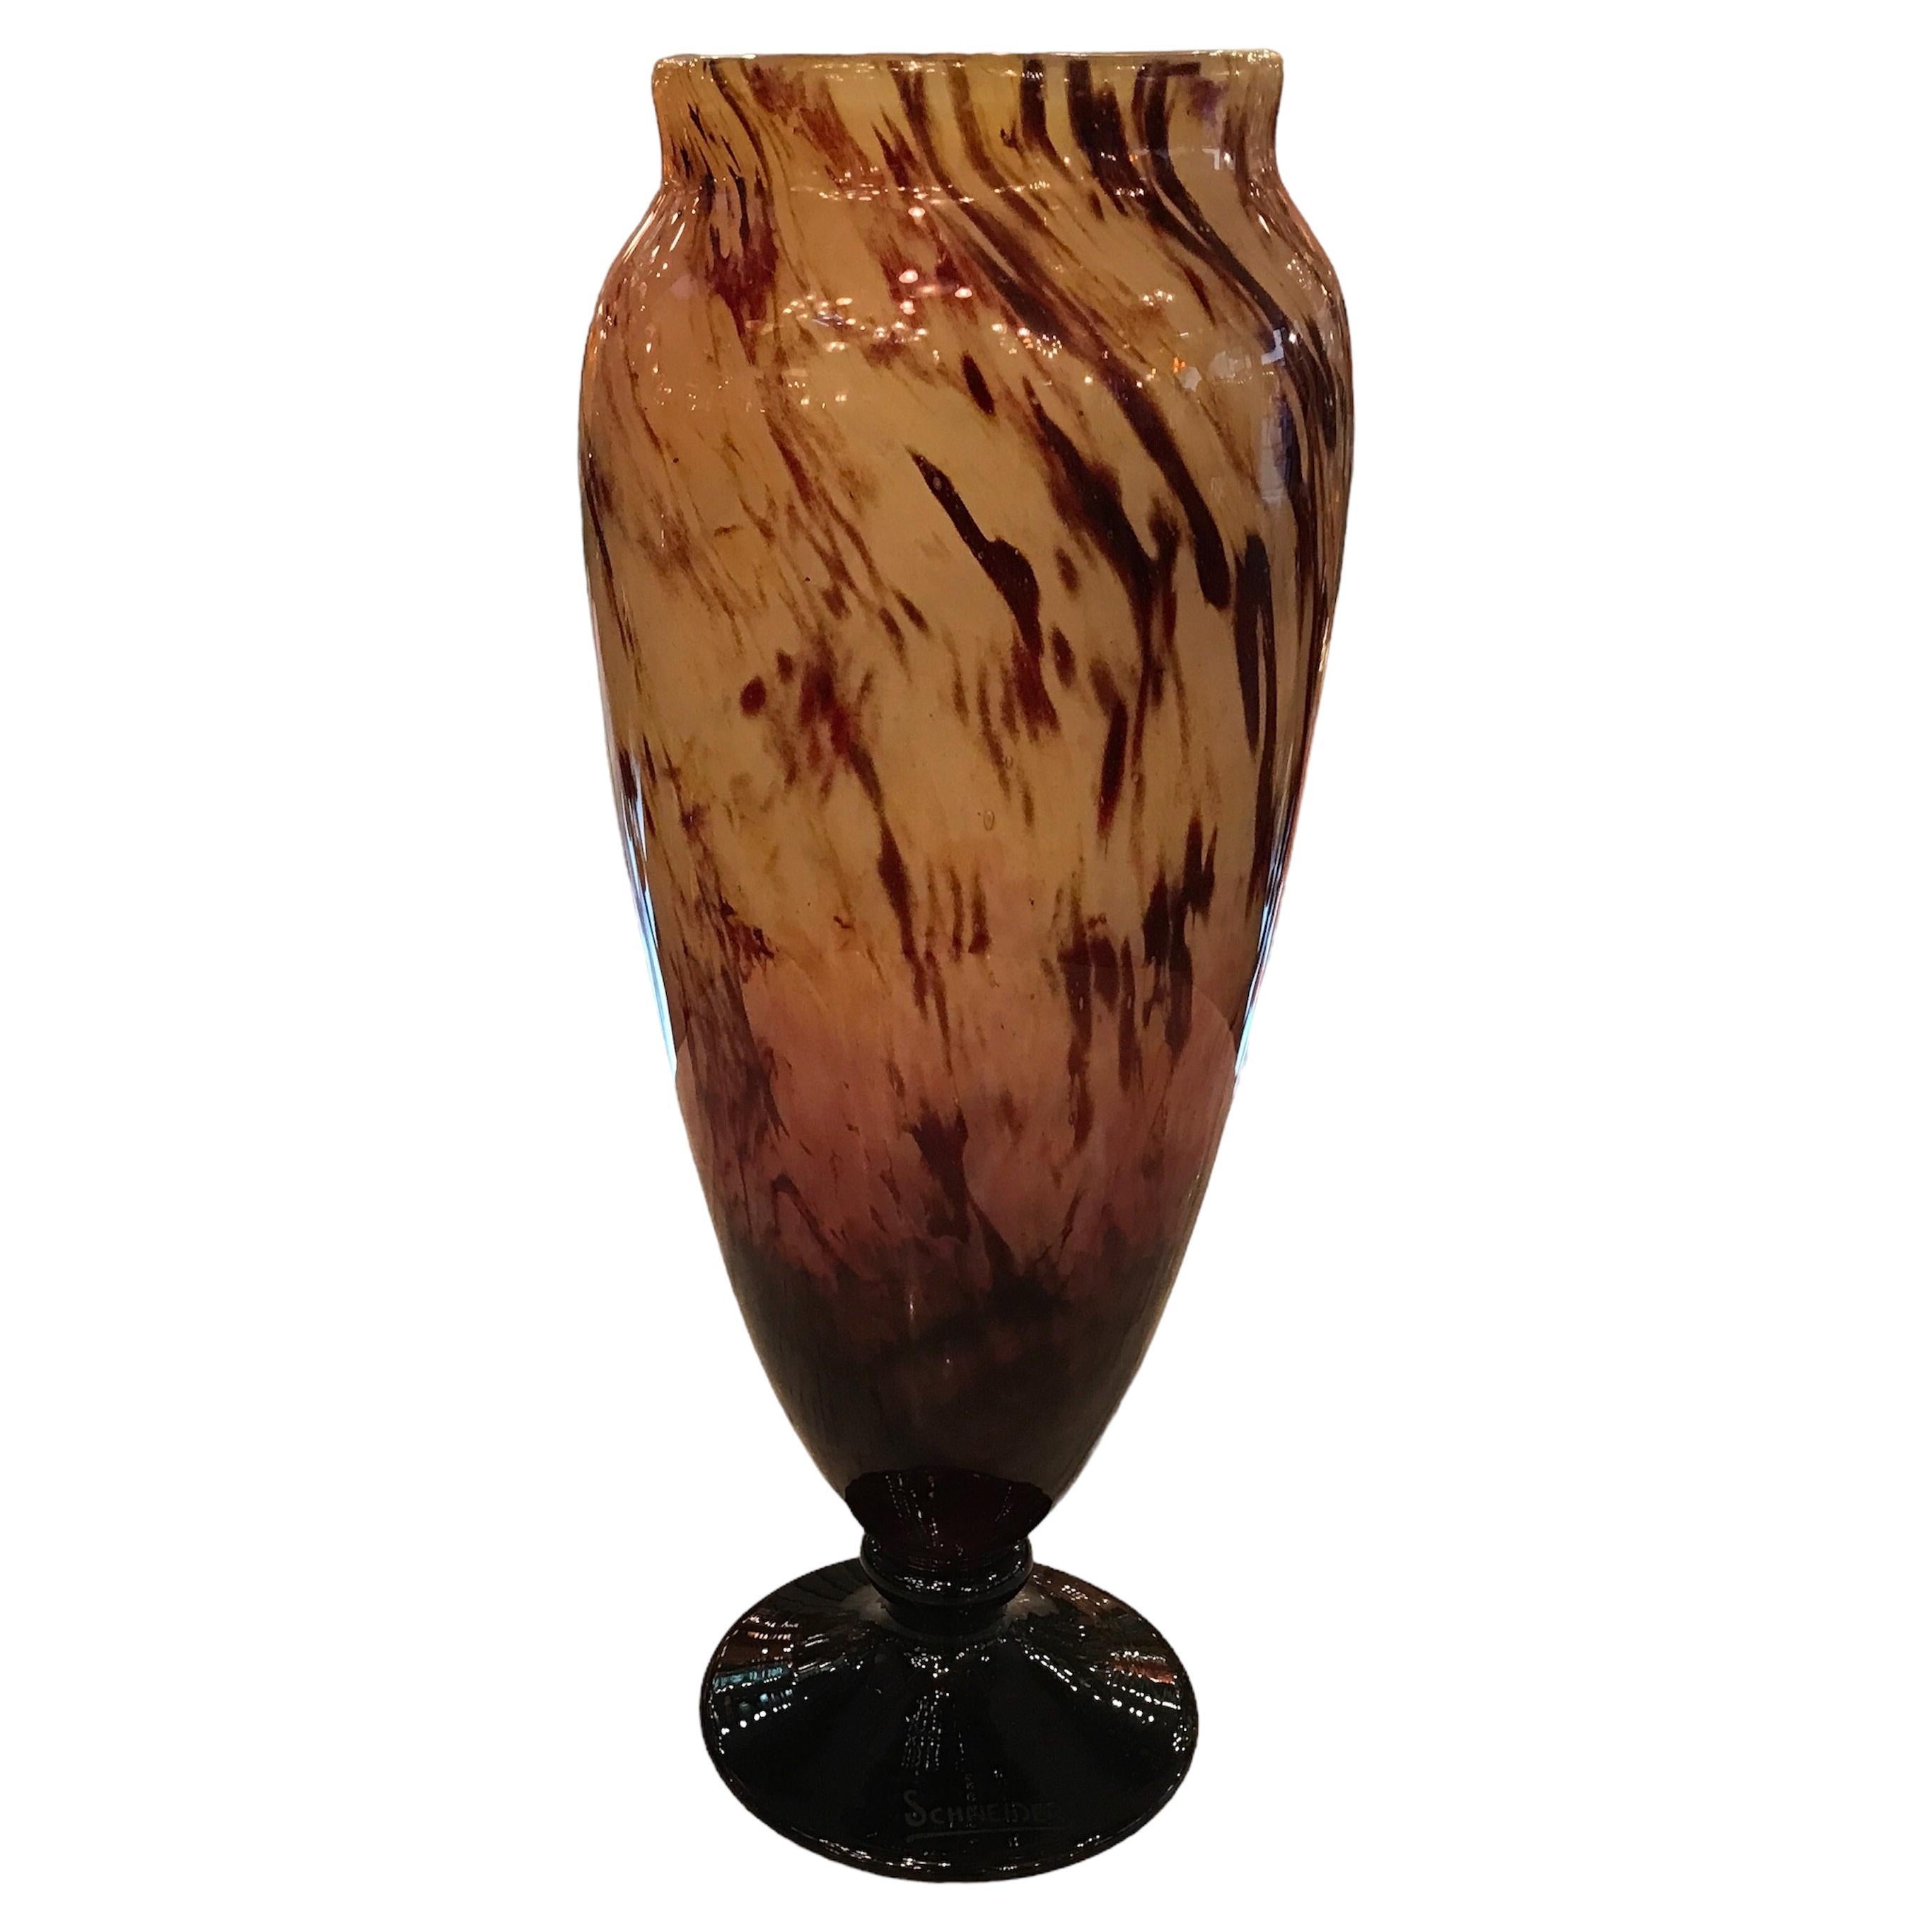 Signature du vase : Schneider ( Décoration Marbrines ), 1924, Style : Art déco